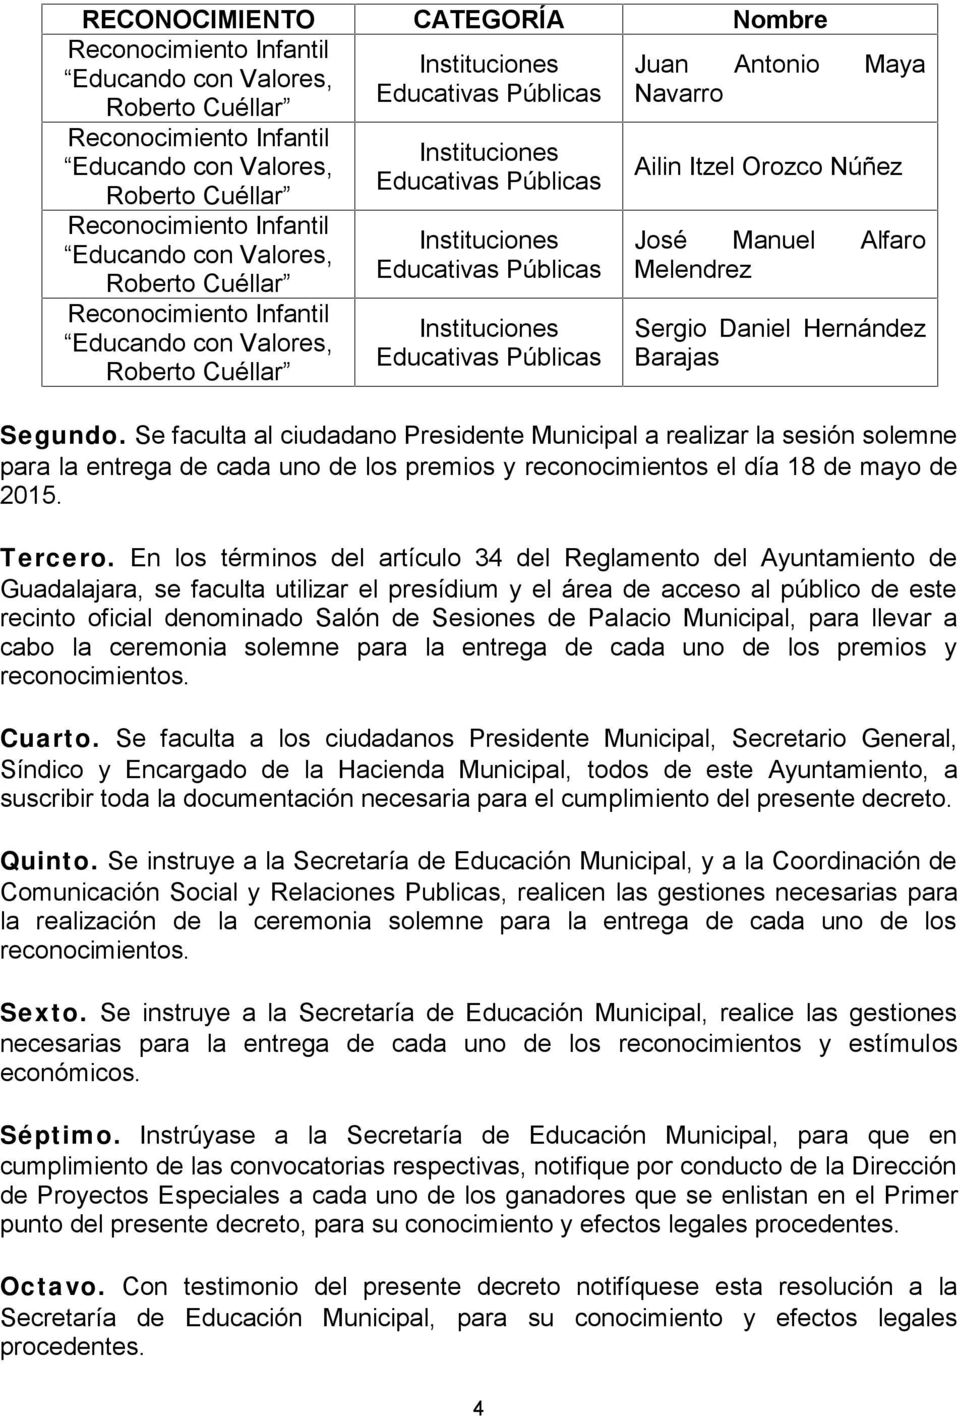 En los términos del artículo 34 del Reglamento del Ayuntamiento de Guadalajara, se faculta utilizar el presídium y el área de acceso al público de este recinto oficial denominado Salón de Sesiones de